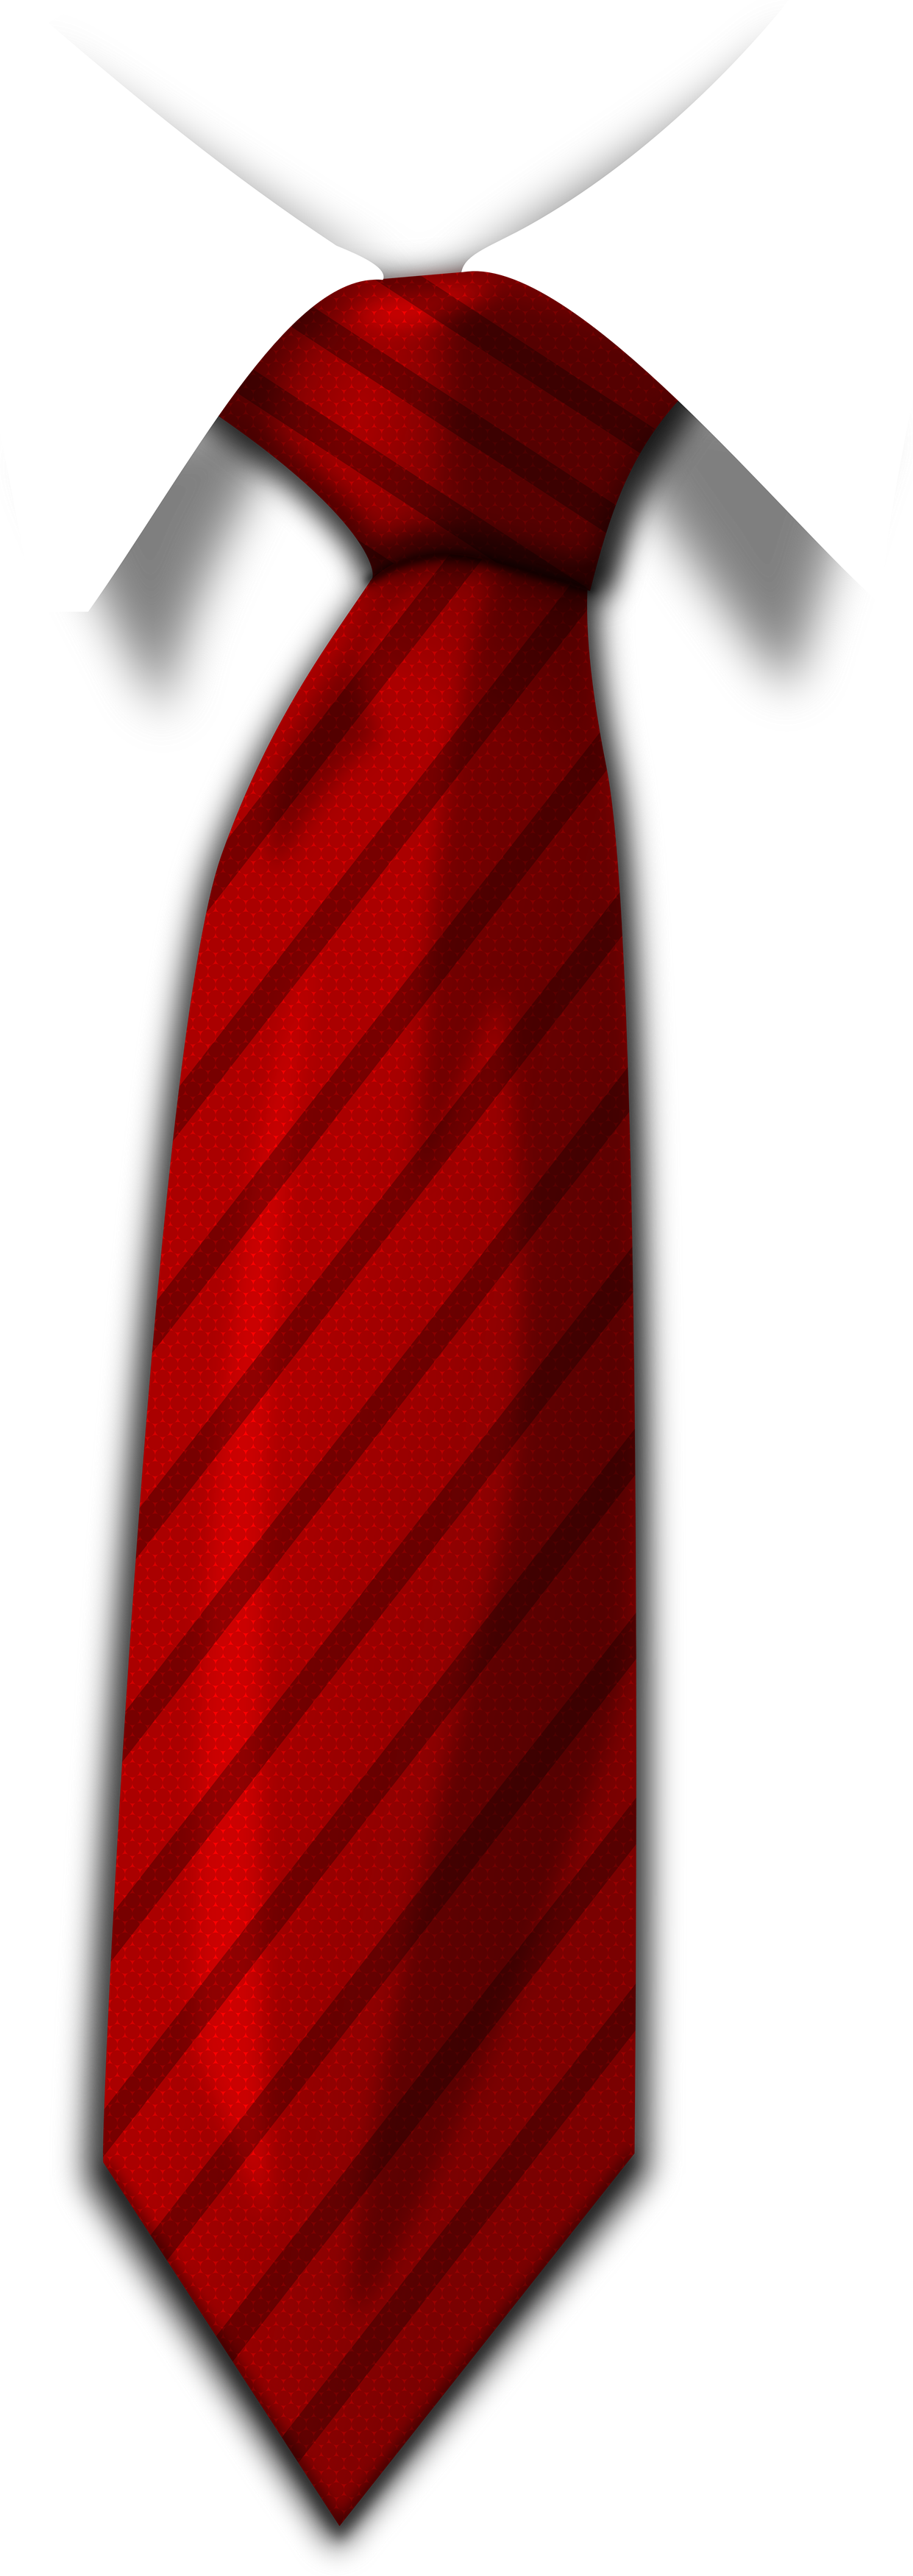 Cà vạt màu đỏ